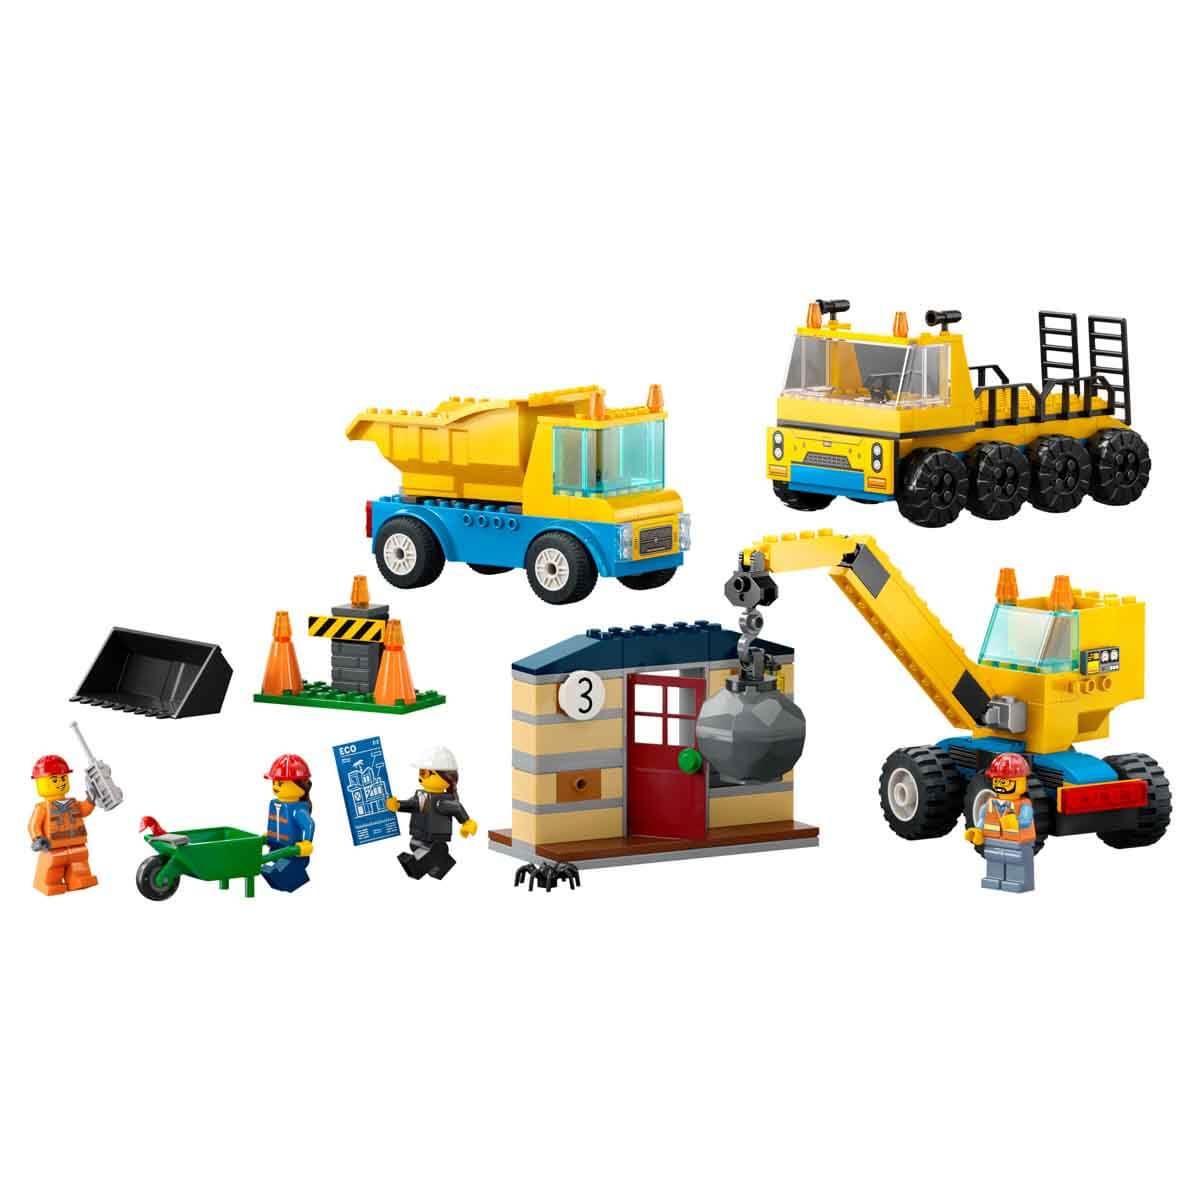 CLZ193 Lego  İnşaat Kamyonları ve Yıkım Gülleli Vinç 60391